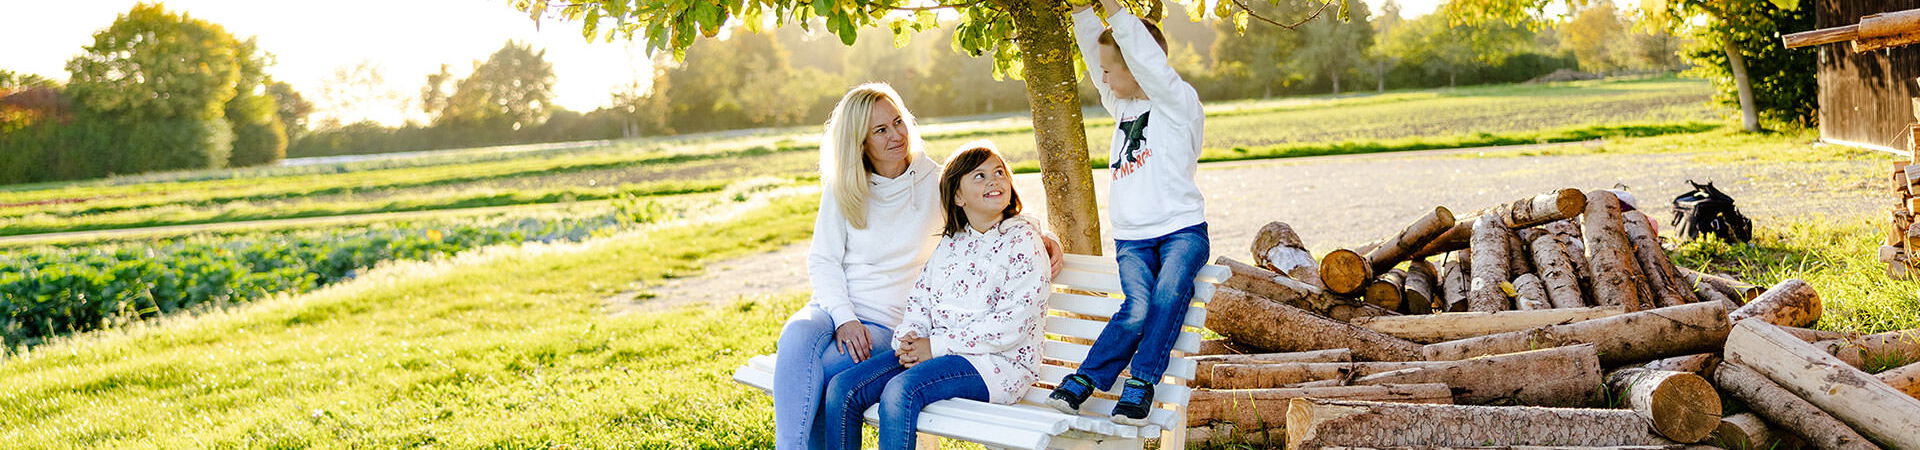 Mary-Ann Schröder mit Kindern unter einem Apfelbaum neben einem Holzstoß